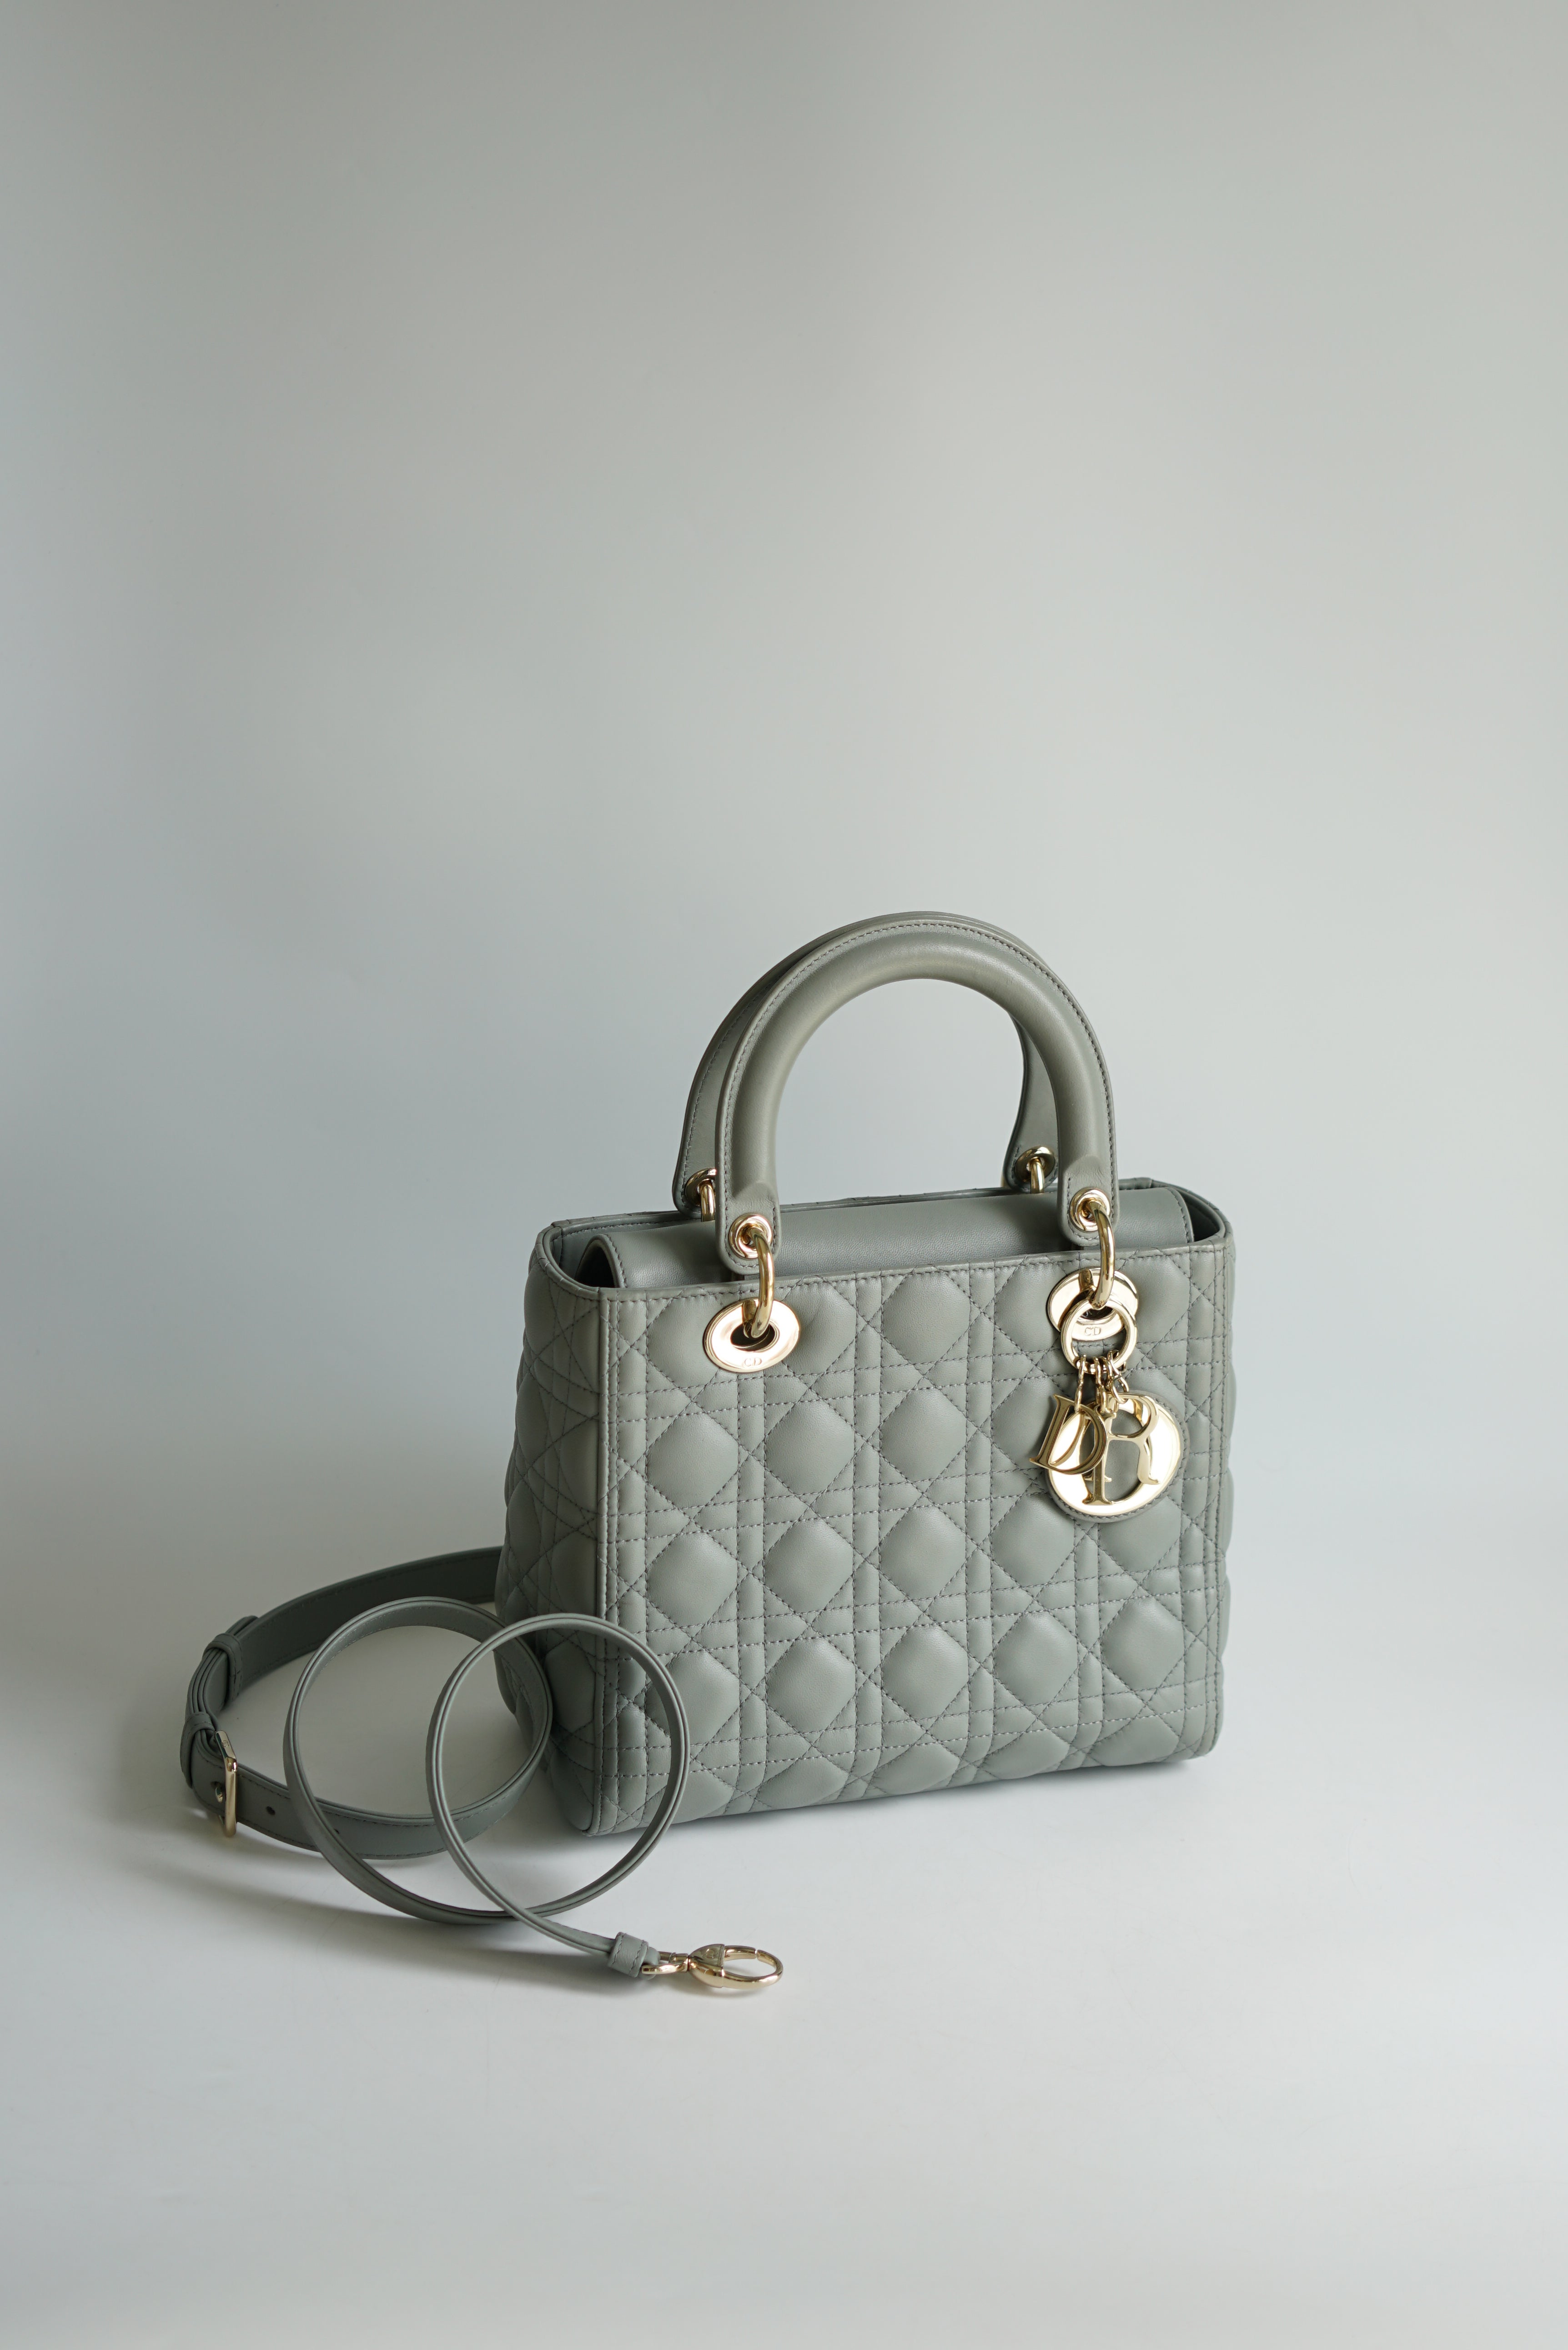 Dior - Medium Lady Dior Bag Stone Gray Cannage Lambskin - Women